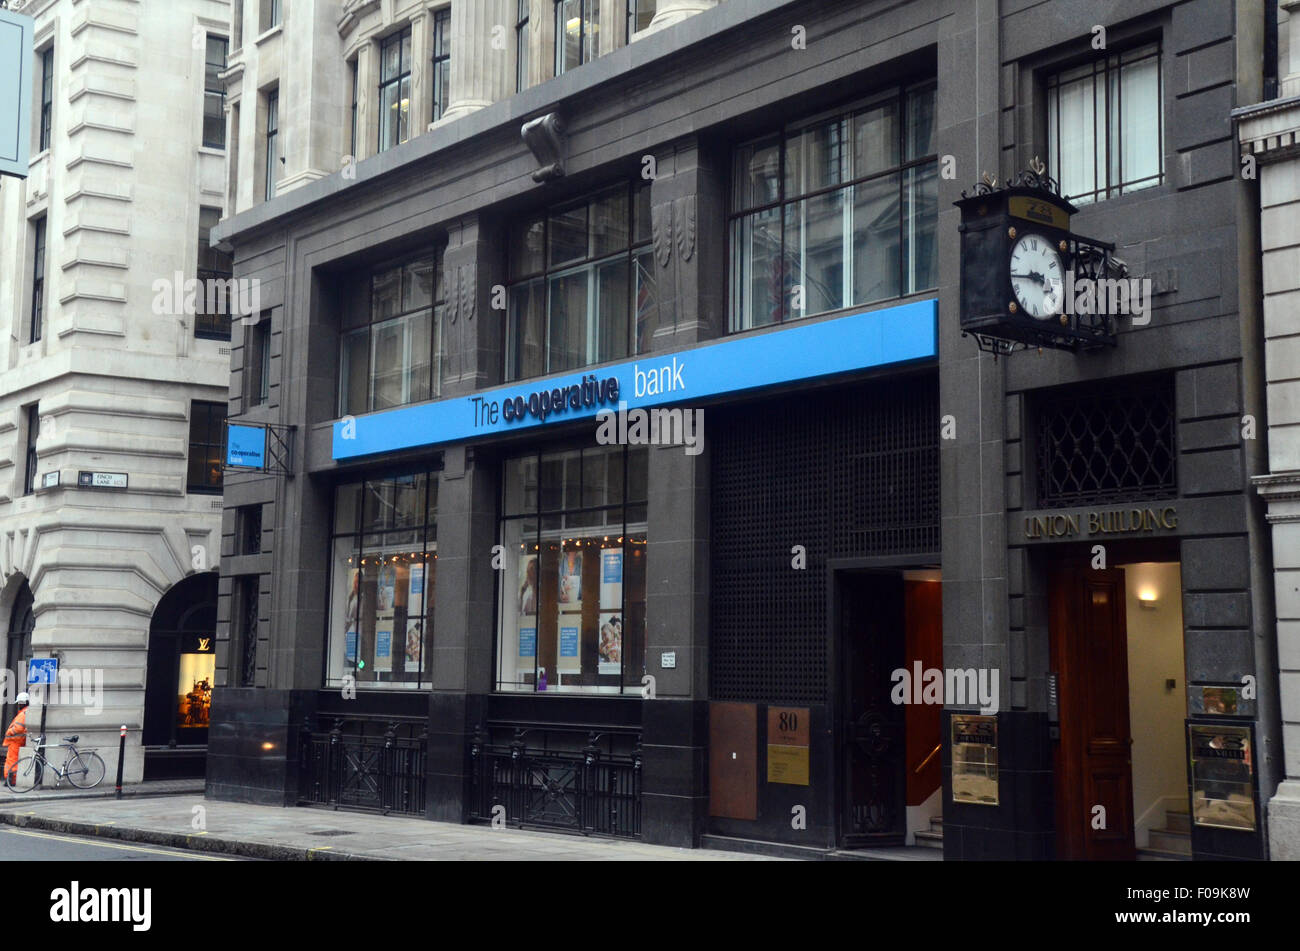 London, UK, 24 April 2014, The Co-operative Bank PLC 80 Cornhill, London EC3V 3NJ Stock Photo